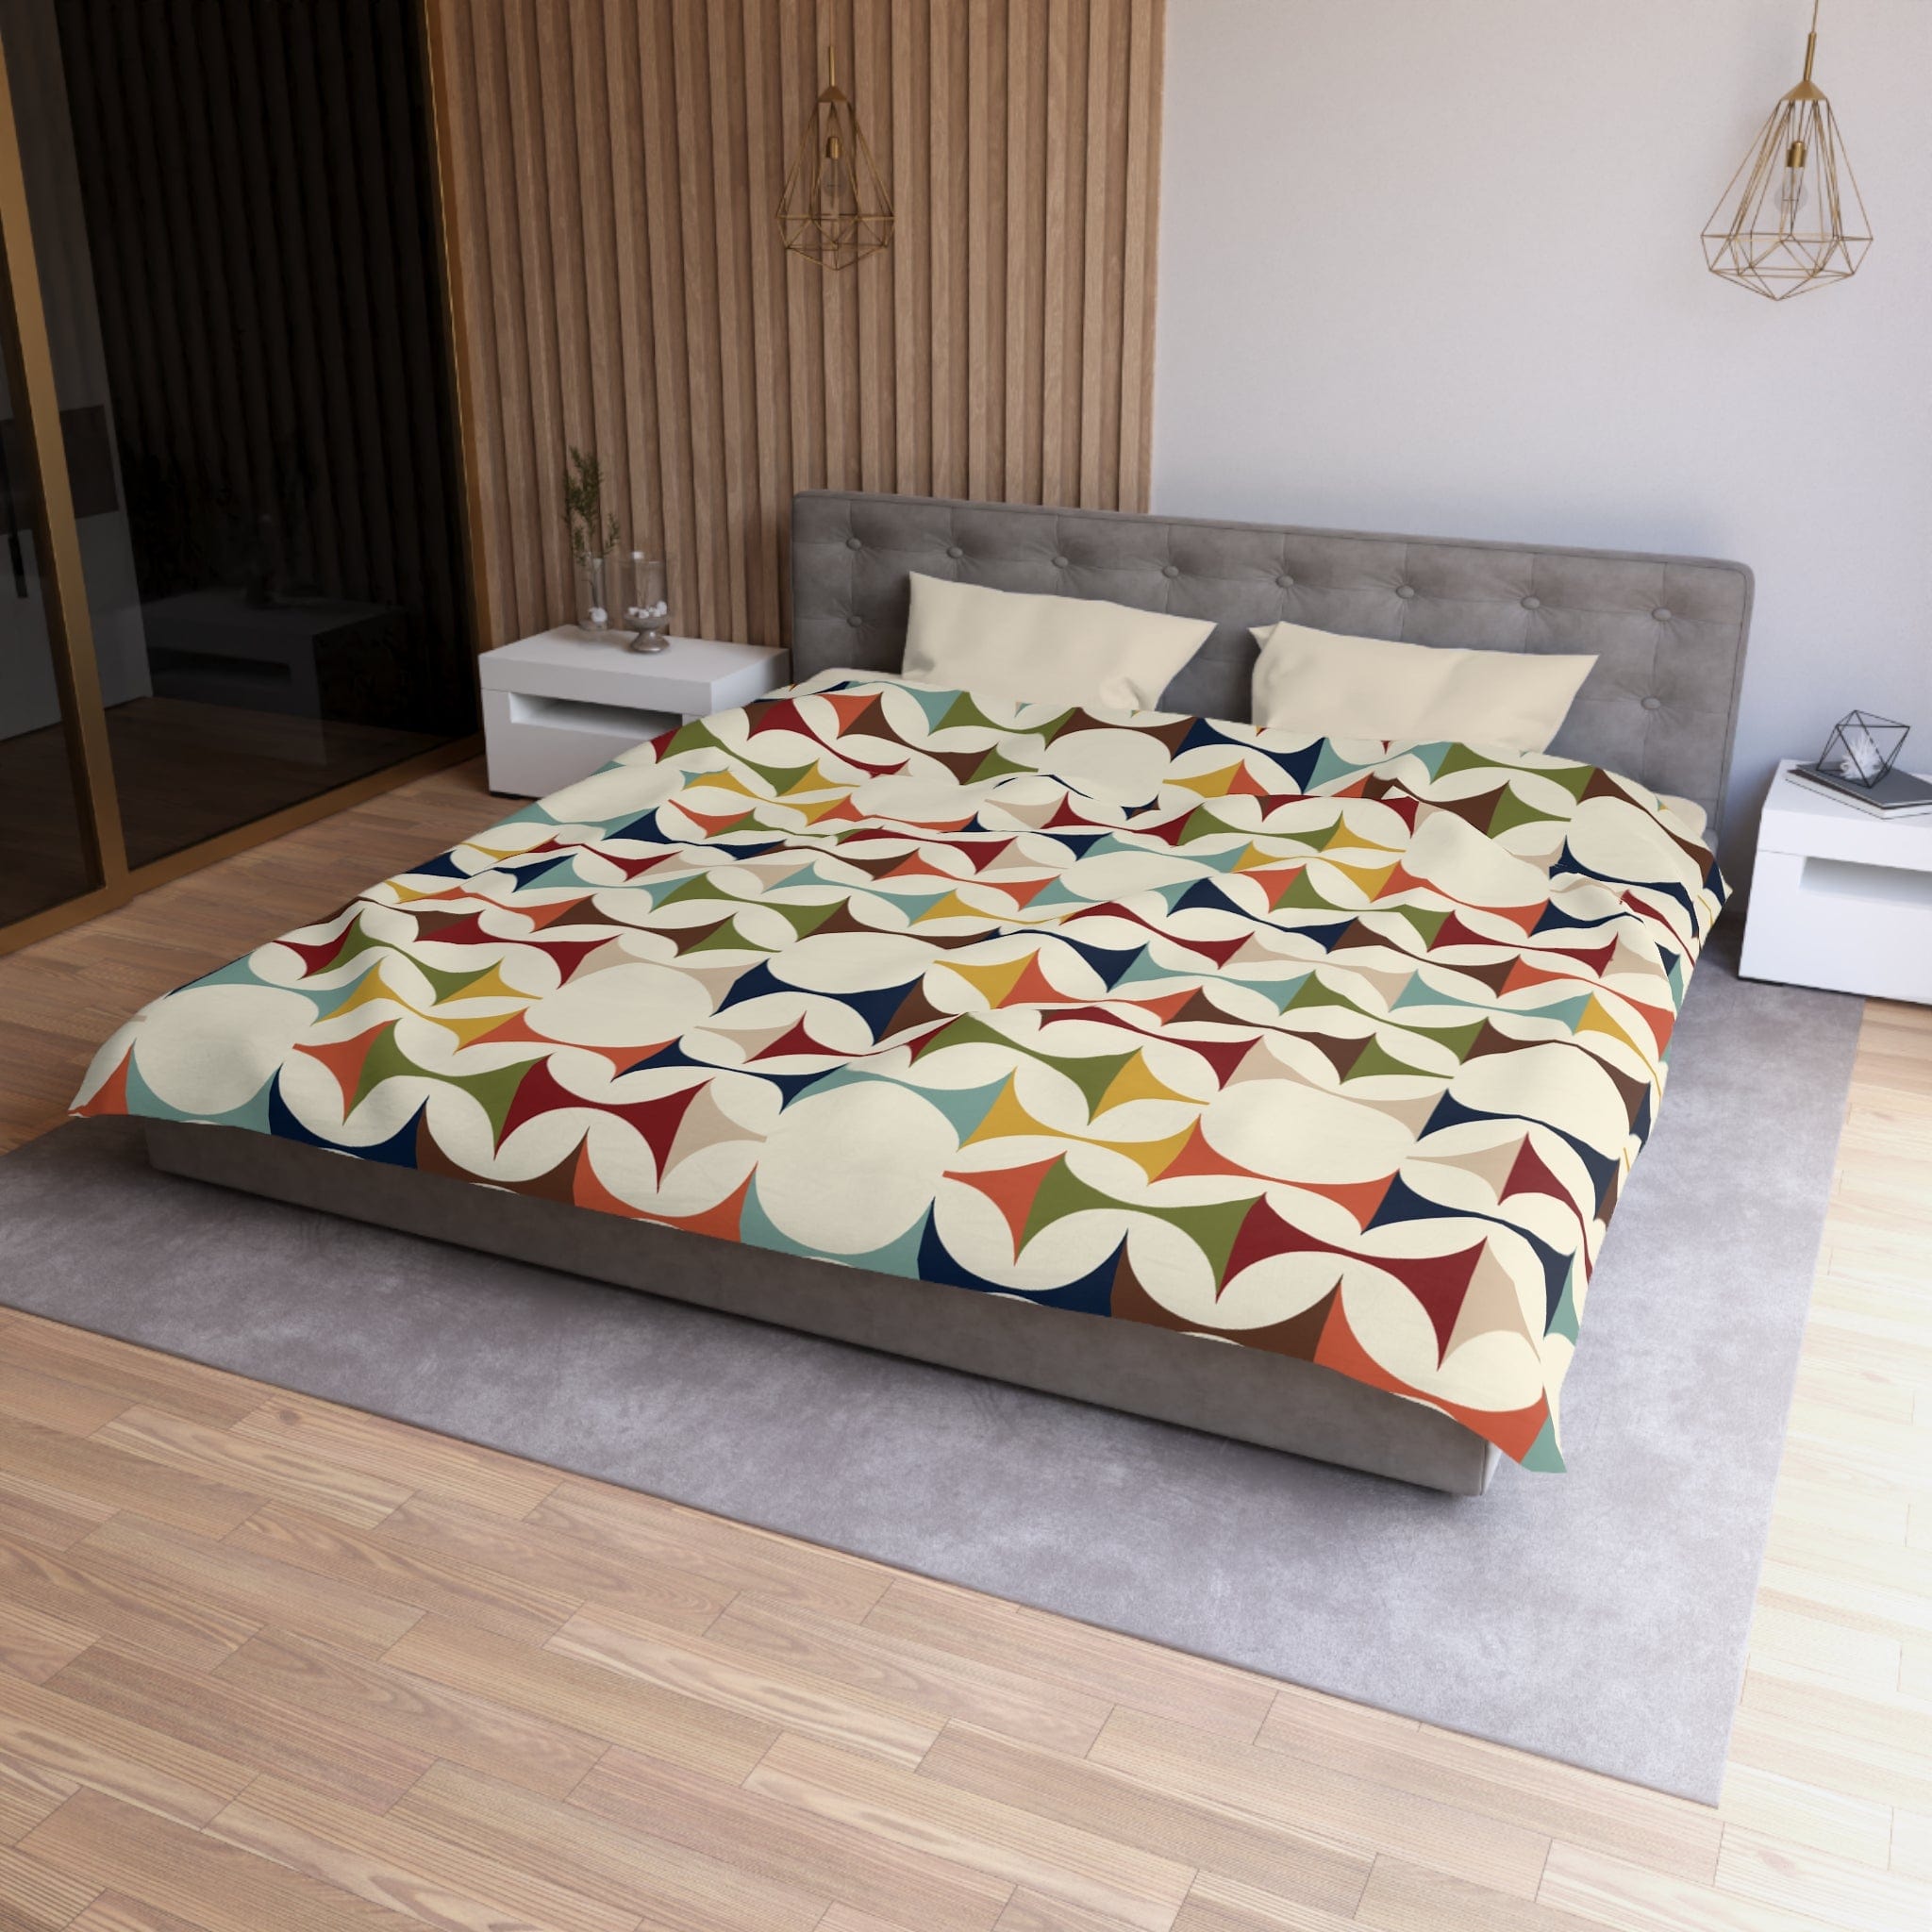 Kate McEnroe New York Retro MCM Duvet Cover, Mid Century Modern Bedding, Vibrant Geometric Scandinavian Modern Danish Bed DecorDuvet Covers13056746829661895535